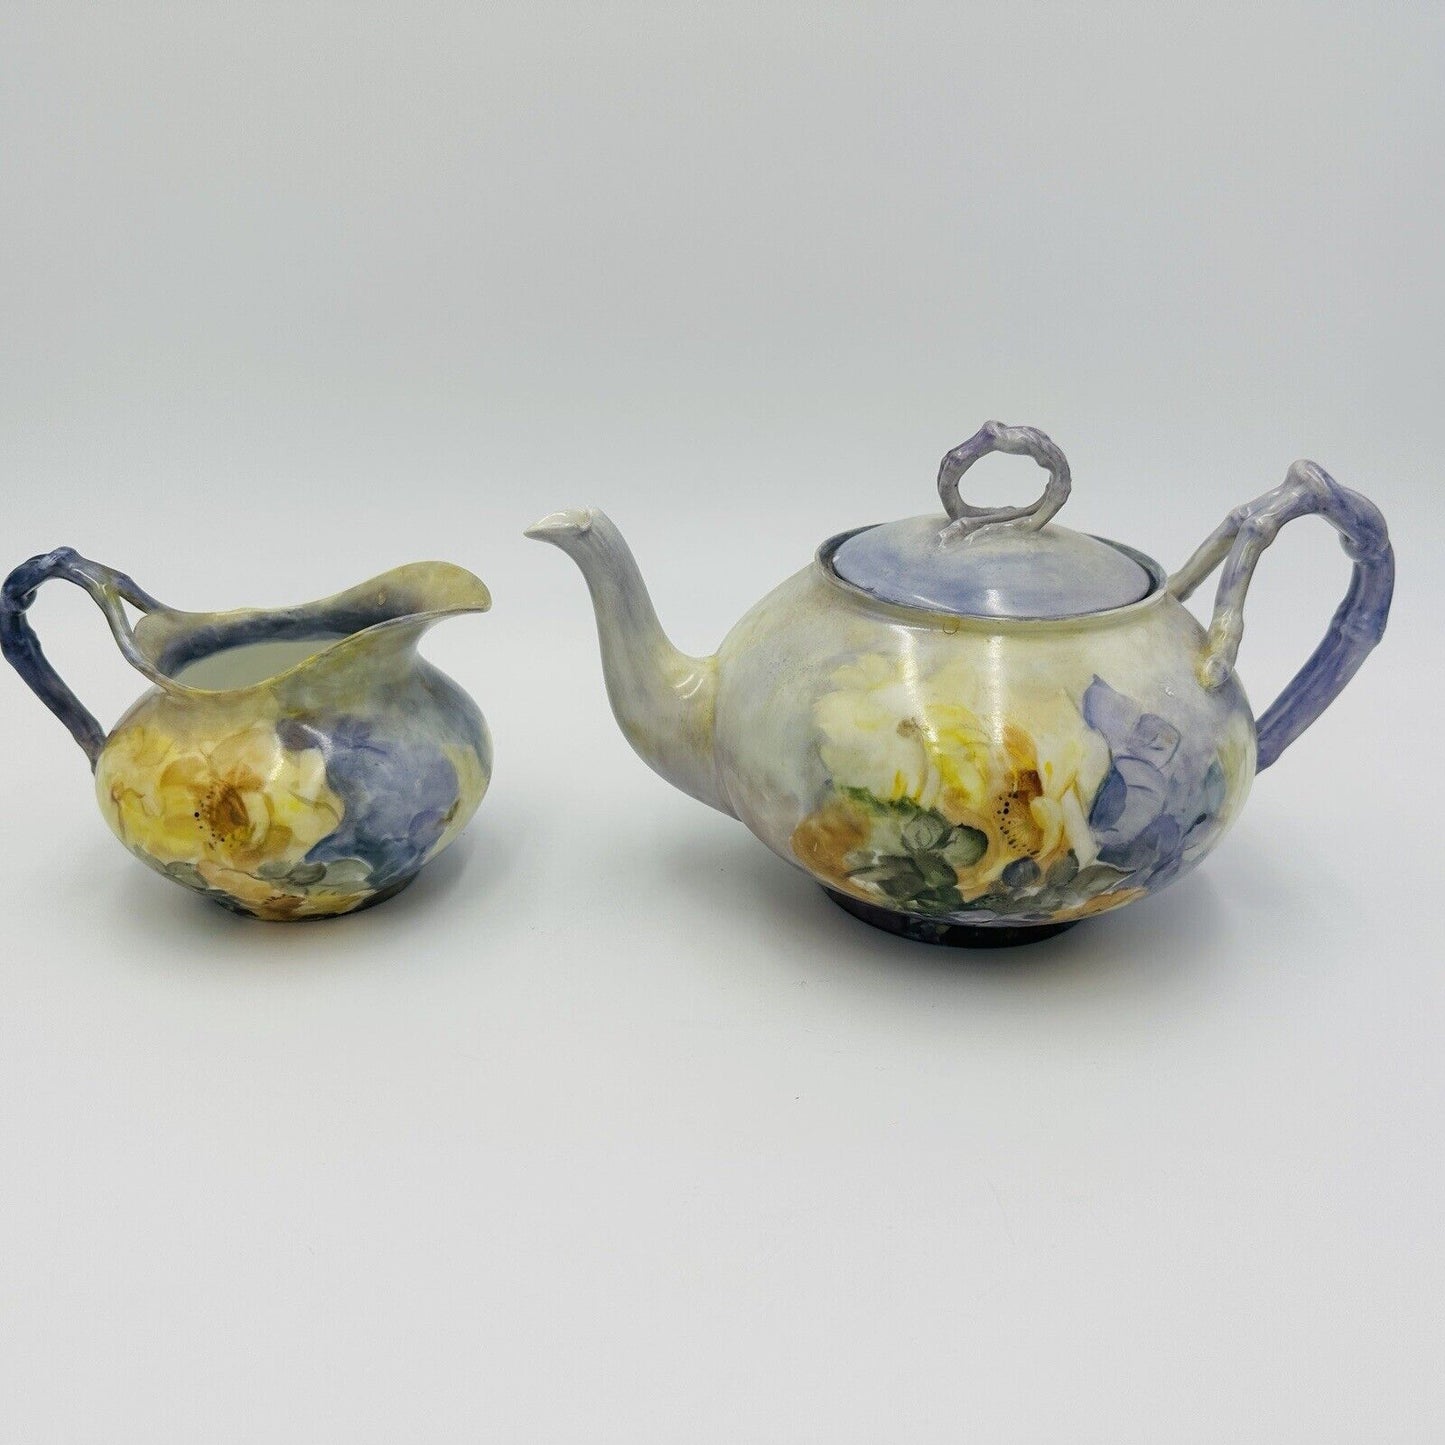 Antique J P L porcelain J Pouyat Limoges France purple yellow teapot creamer